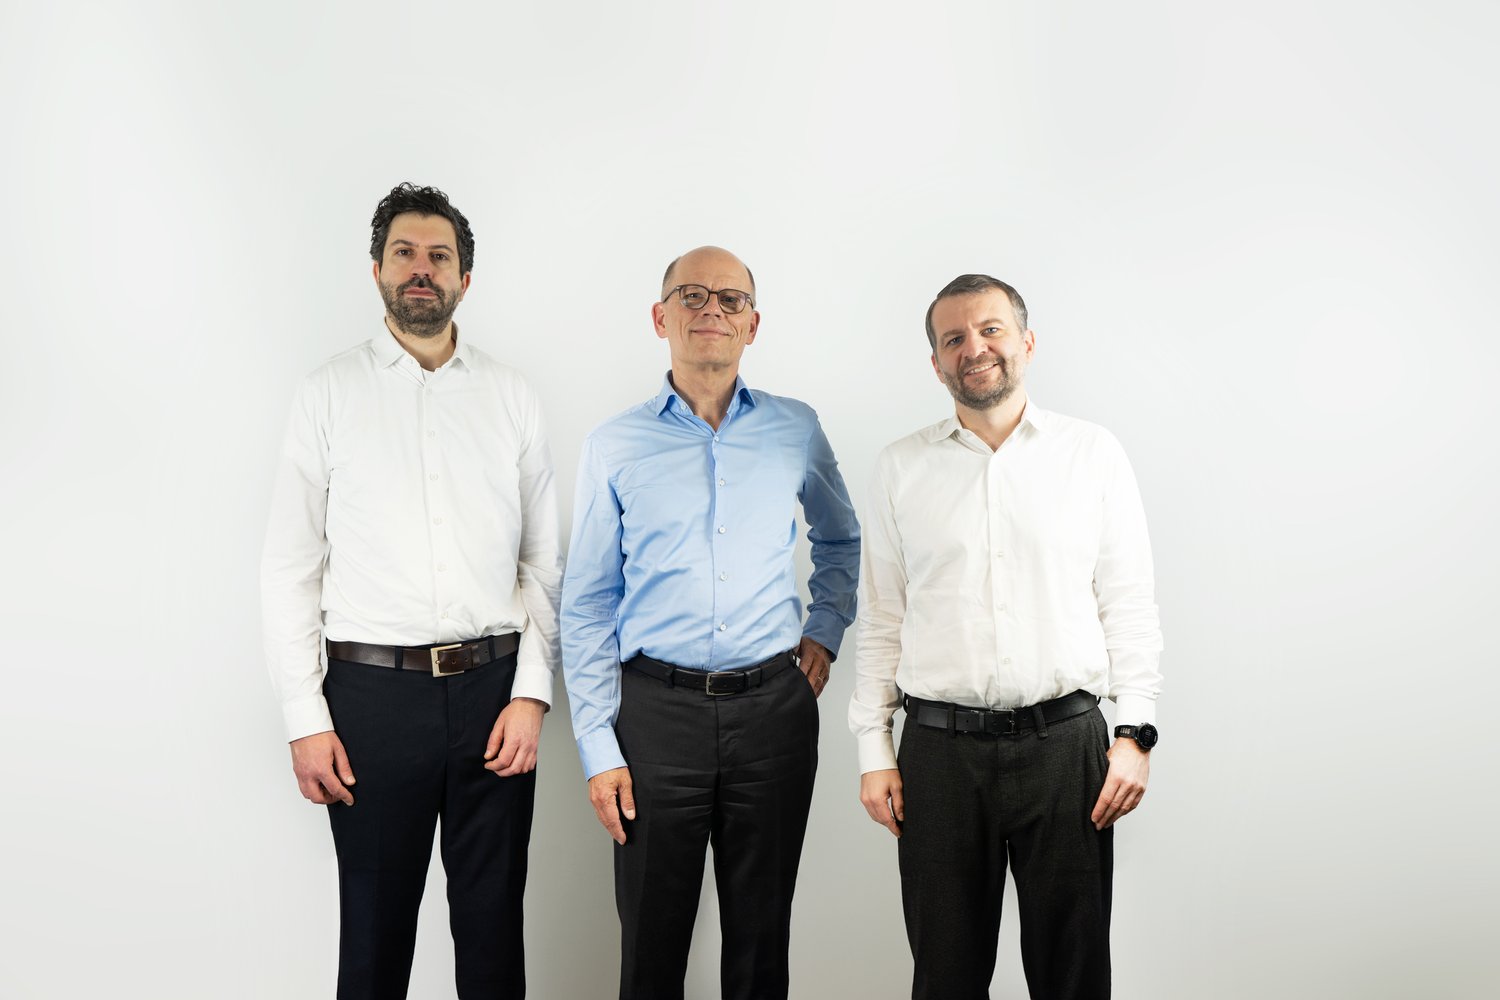 (From left) Jens Lambrecht of Gestalt Robotics, Johannes Schmidt of INDUS Holding, and Thomas Staufenbiel of Gestalt Robotics. Courtesy of Gestalt Robotics